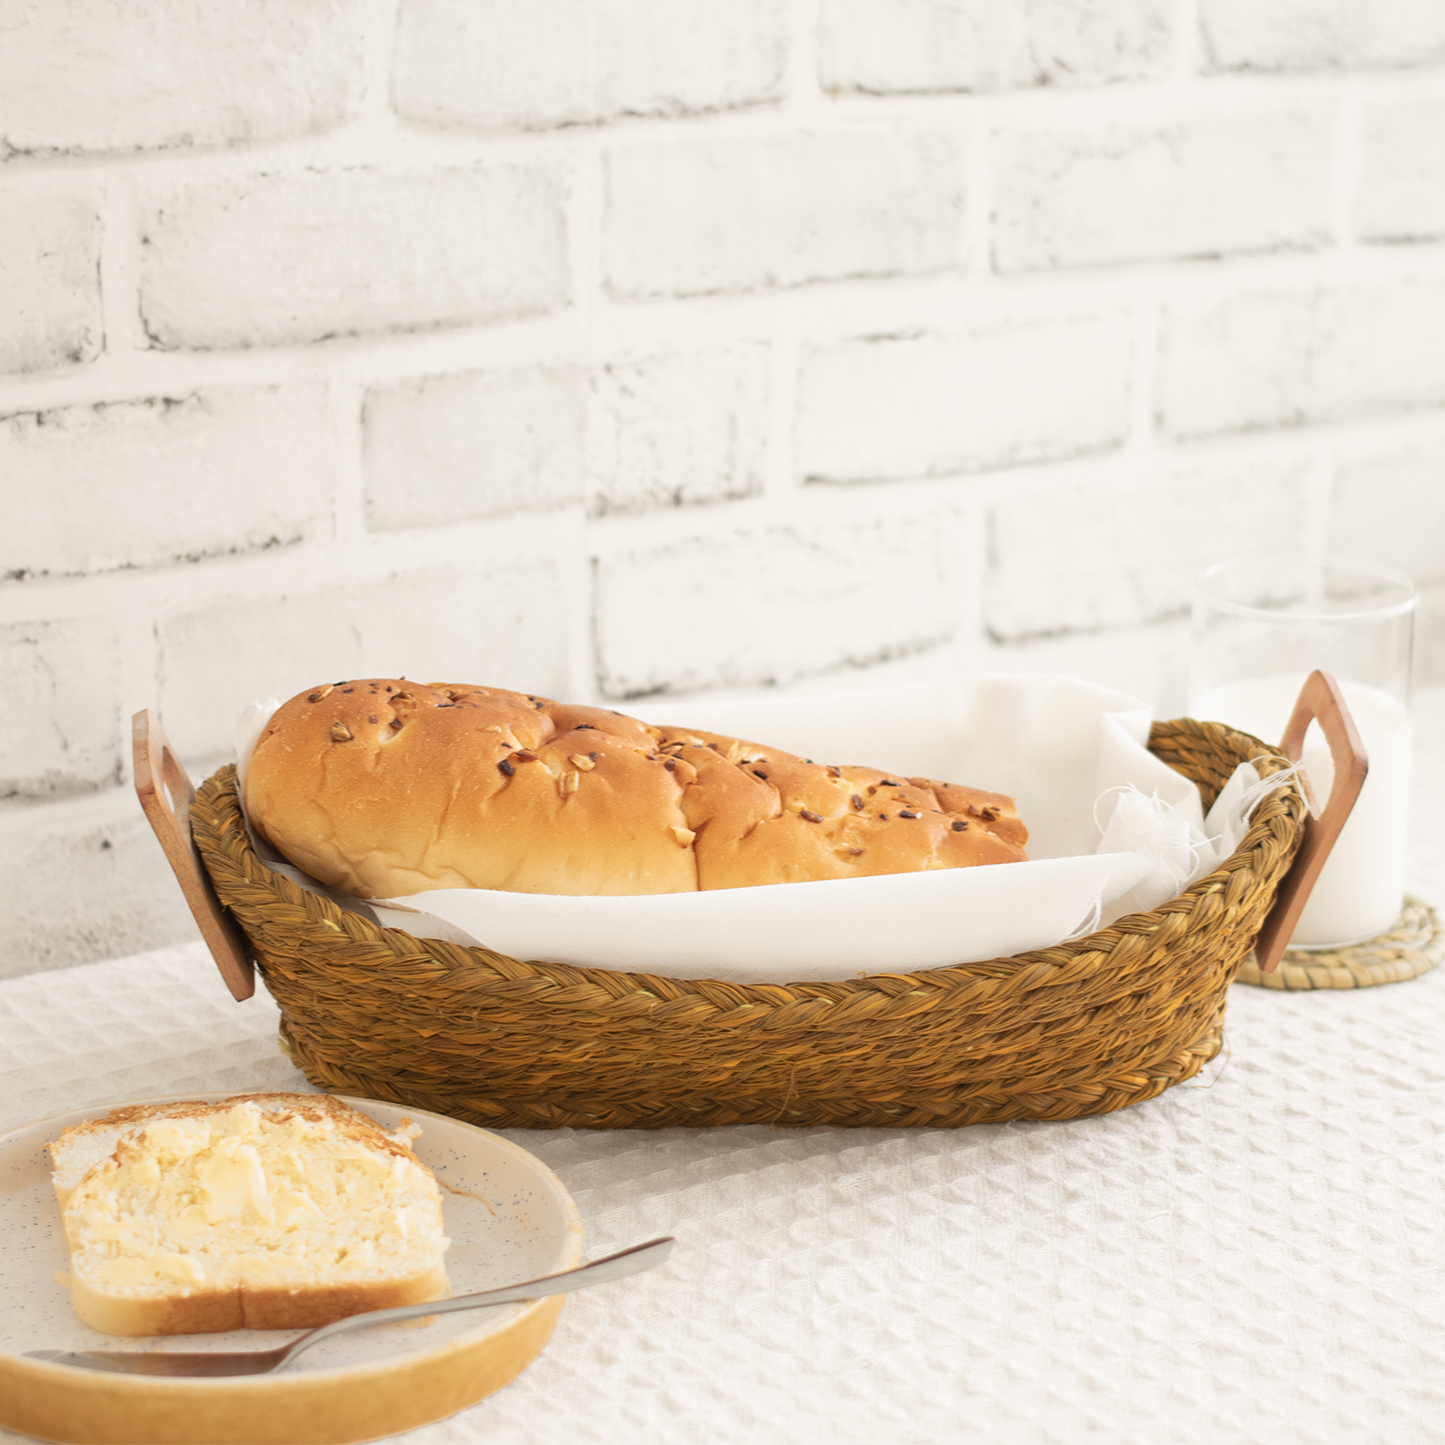 Sabai Grass handwoven bread basket